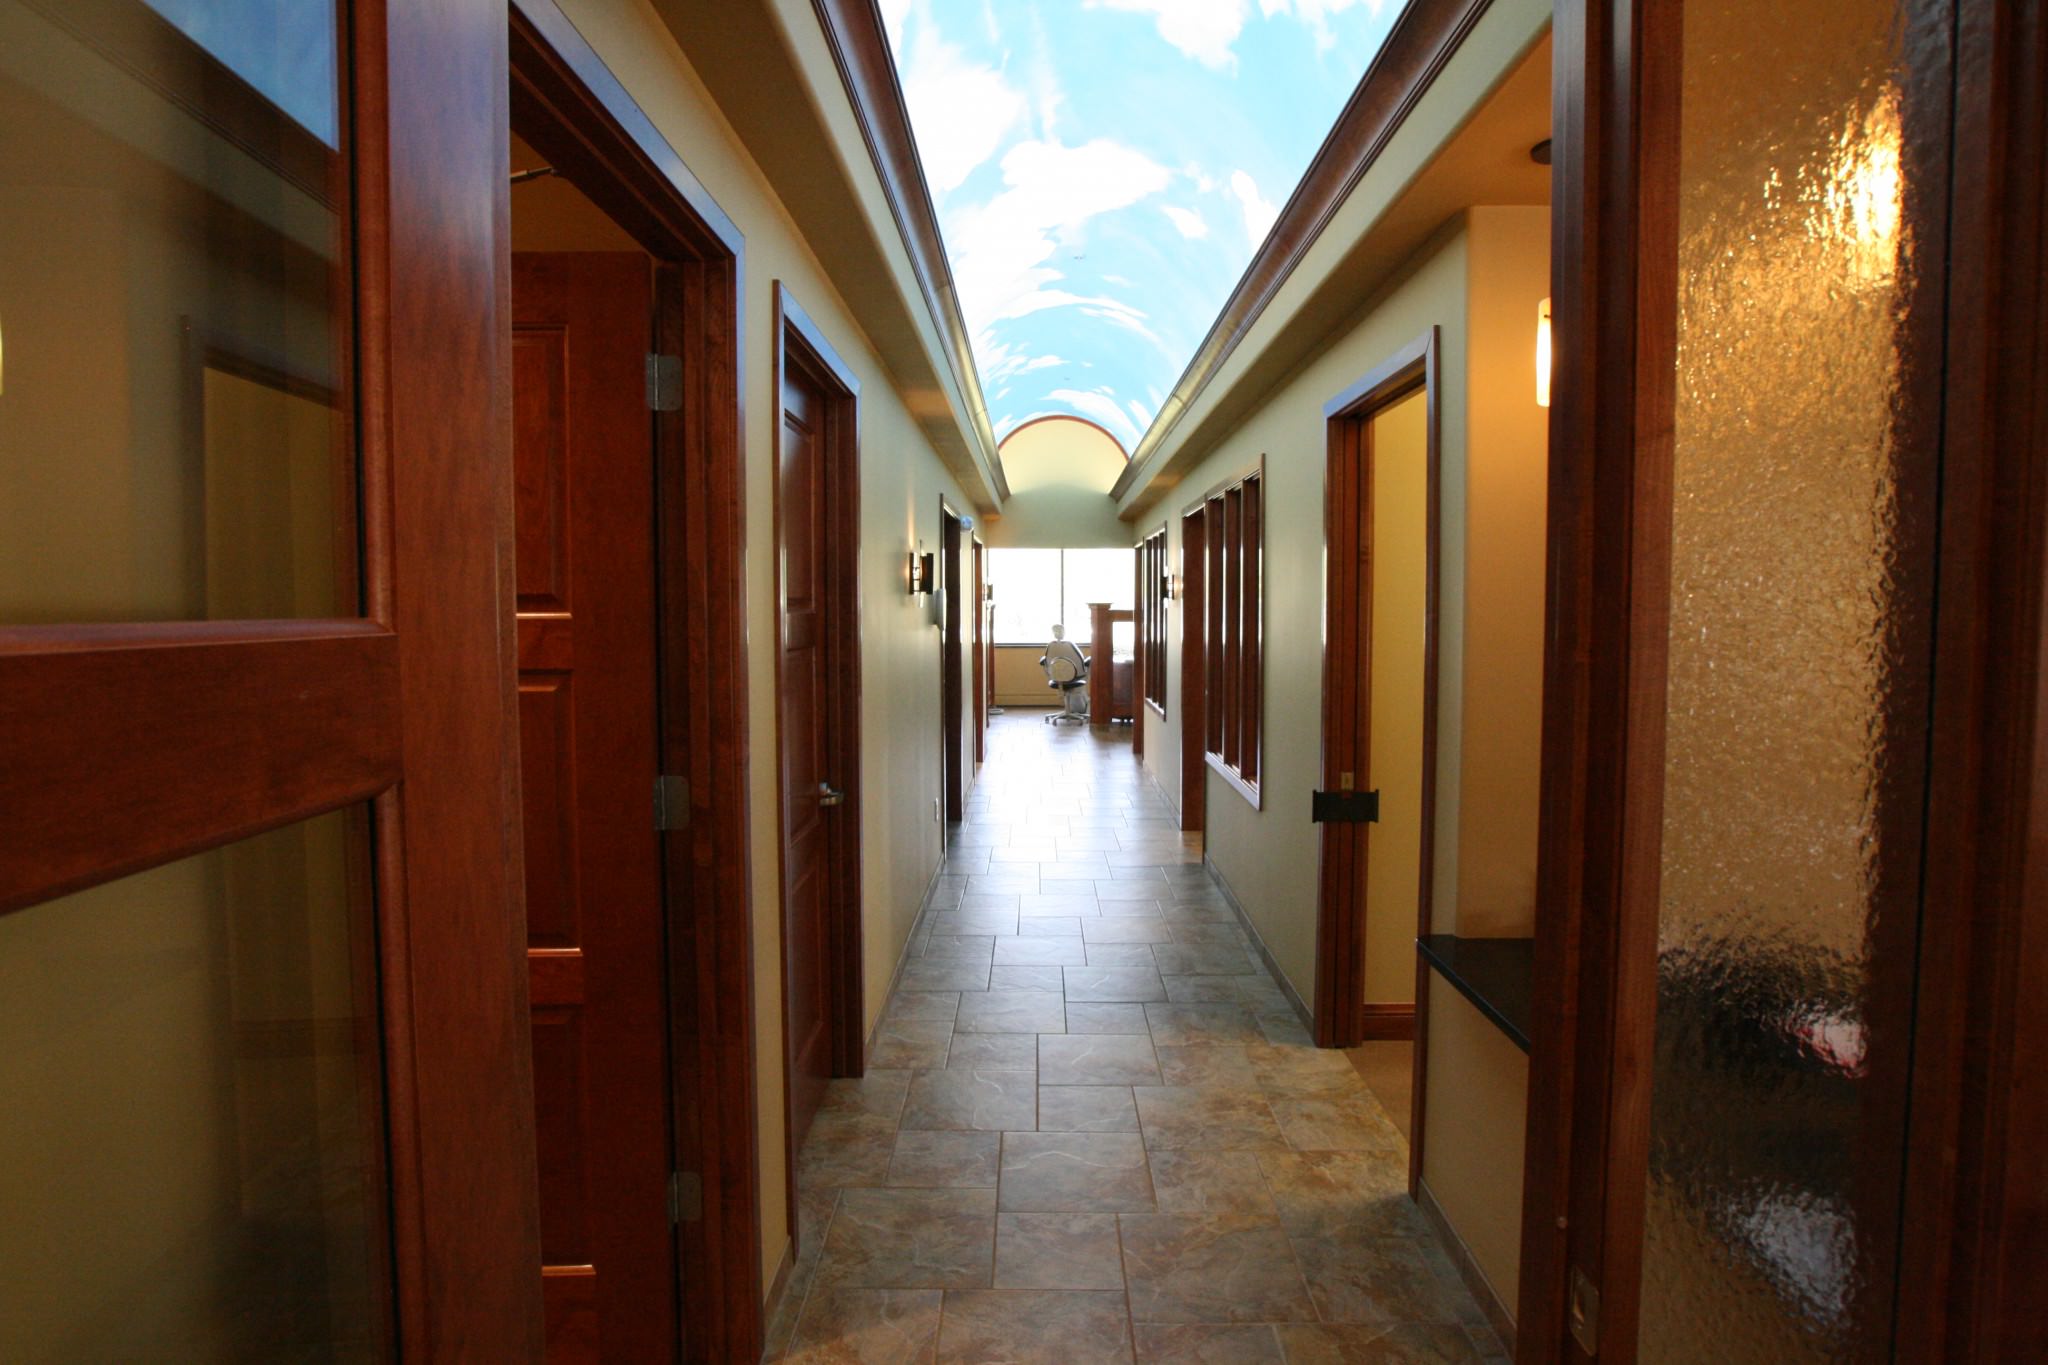 Huse hallway